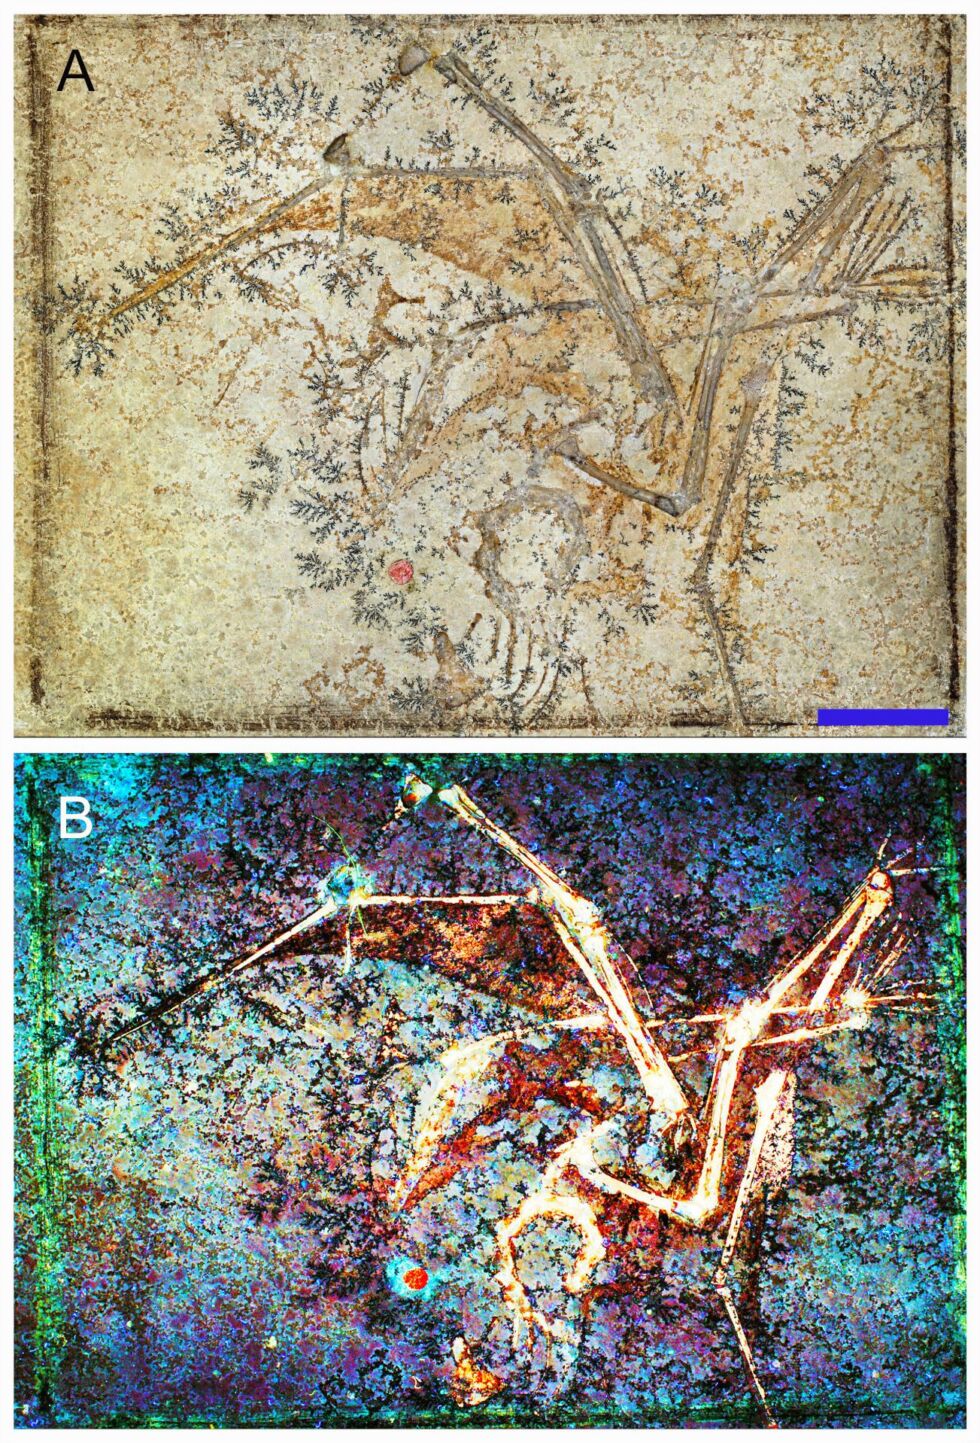 Aurorazhdarchid pterozauro fosilijos skeletas ir susiję minkštieji audiniai.